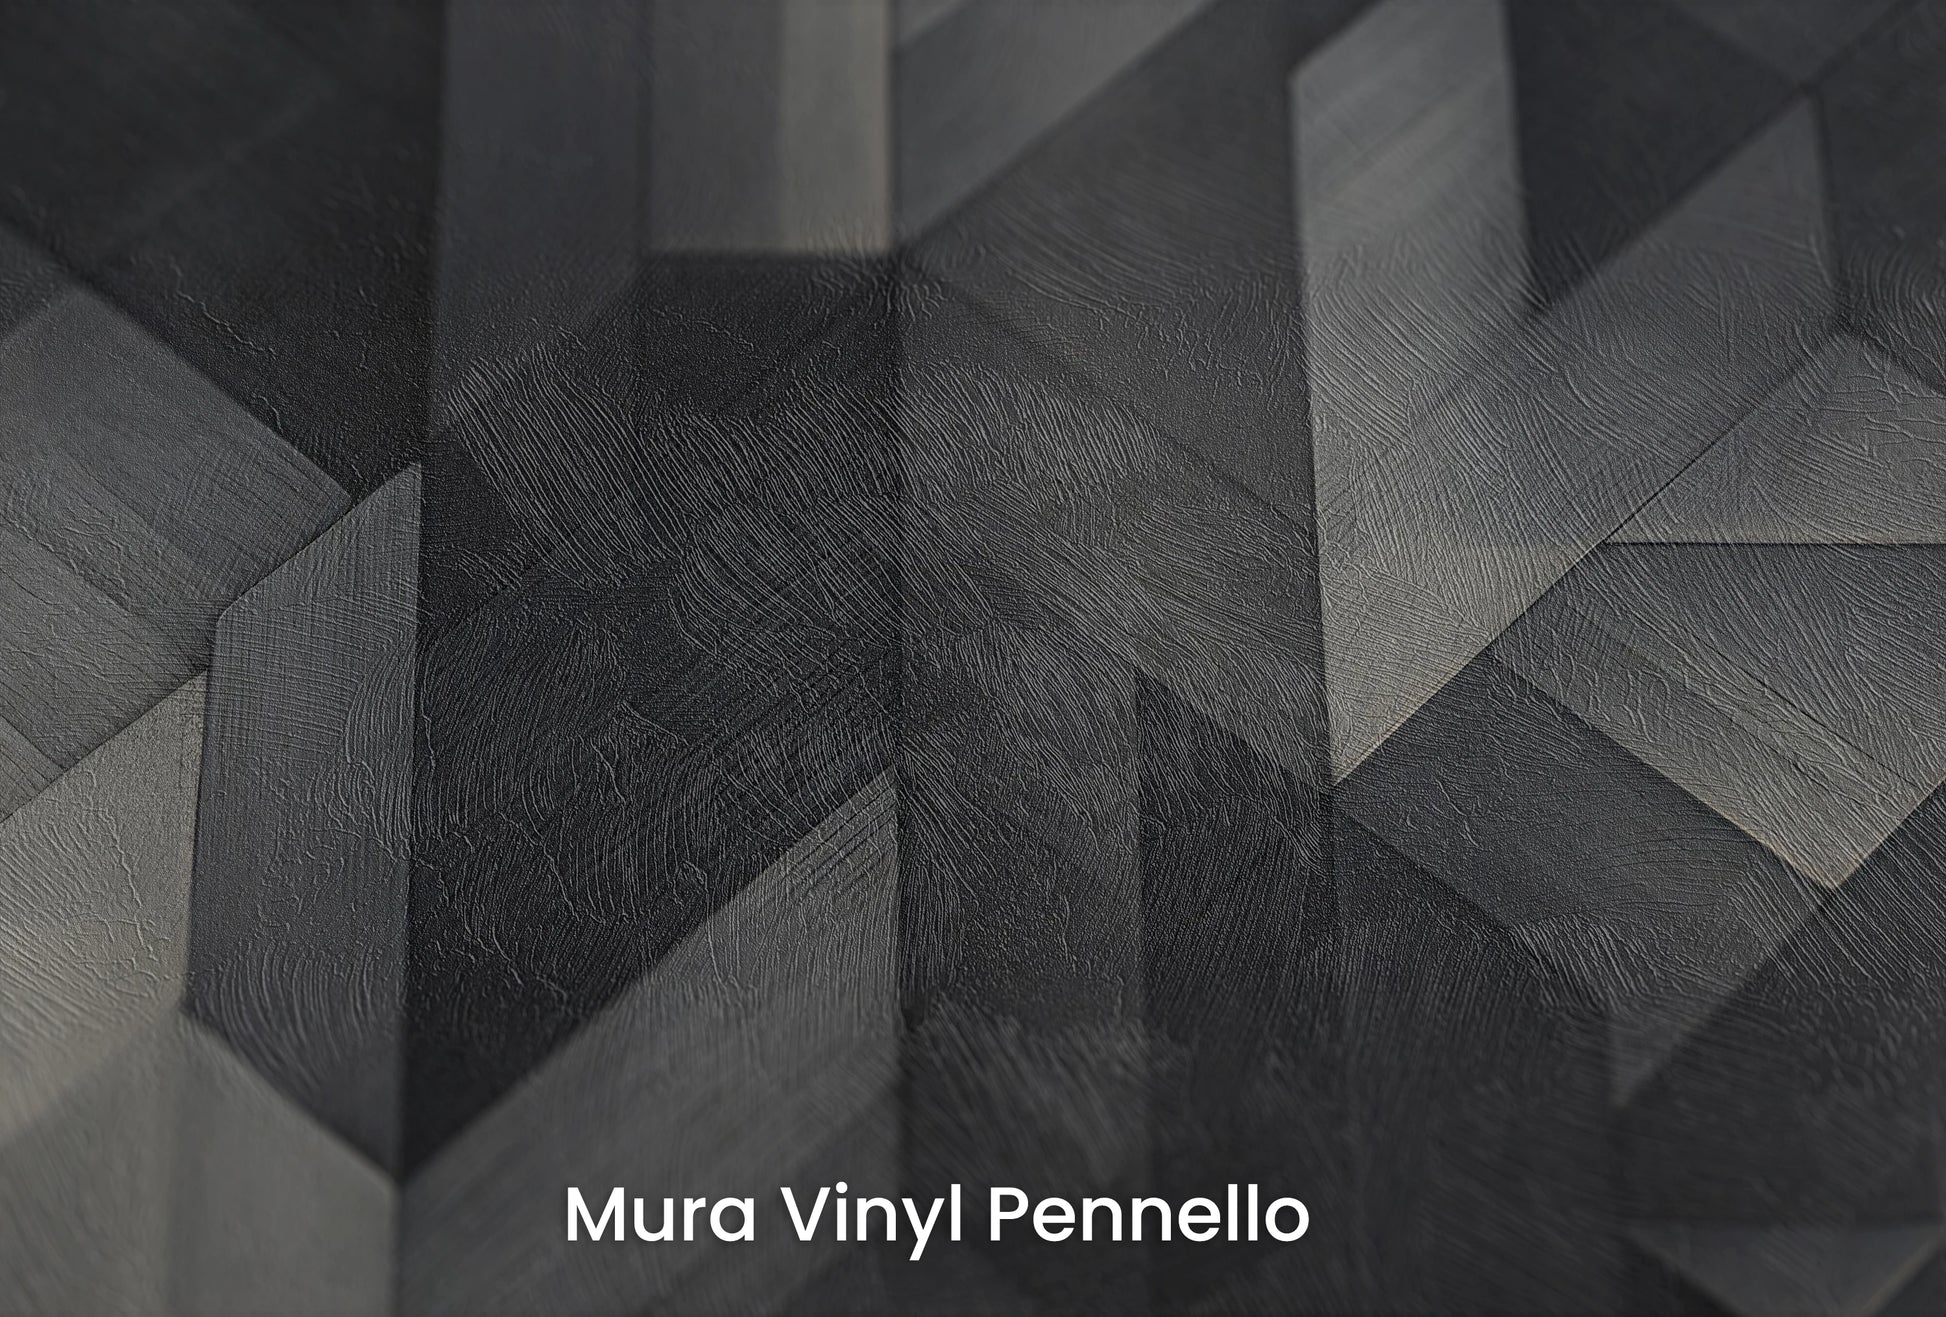 Zbliżenie na artystyczną fototapetę o nazwie Dark Timber Mosaic na podłożu Mura Vinyl Pennello - faktura pociągnięć pędzla malarskiego.